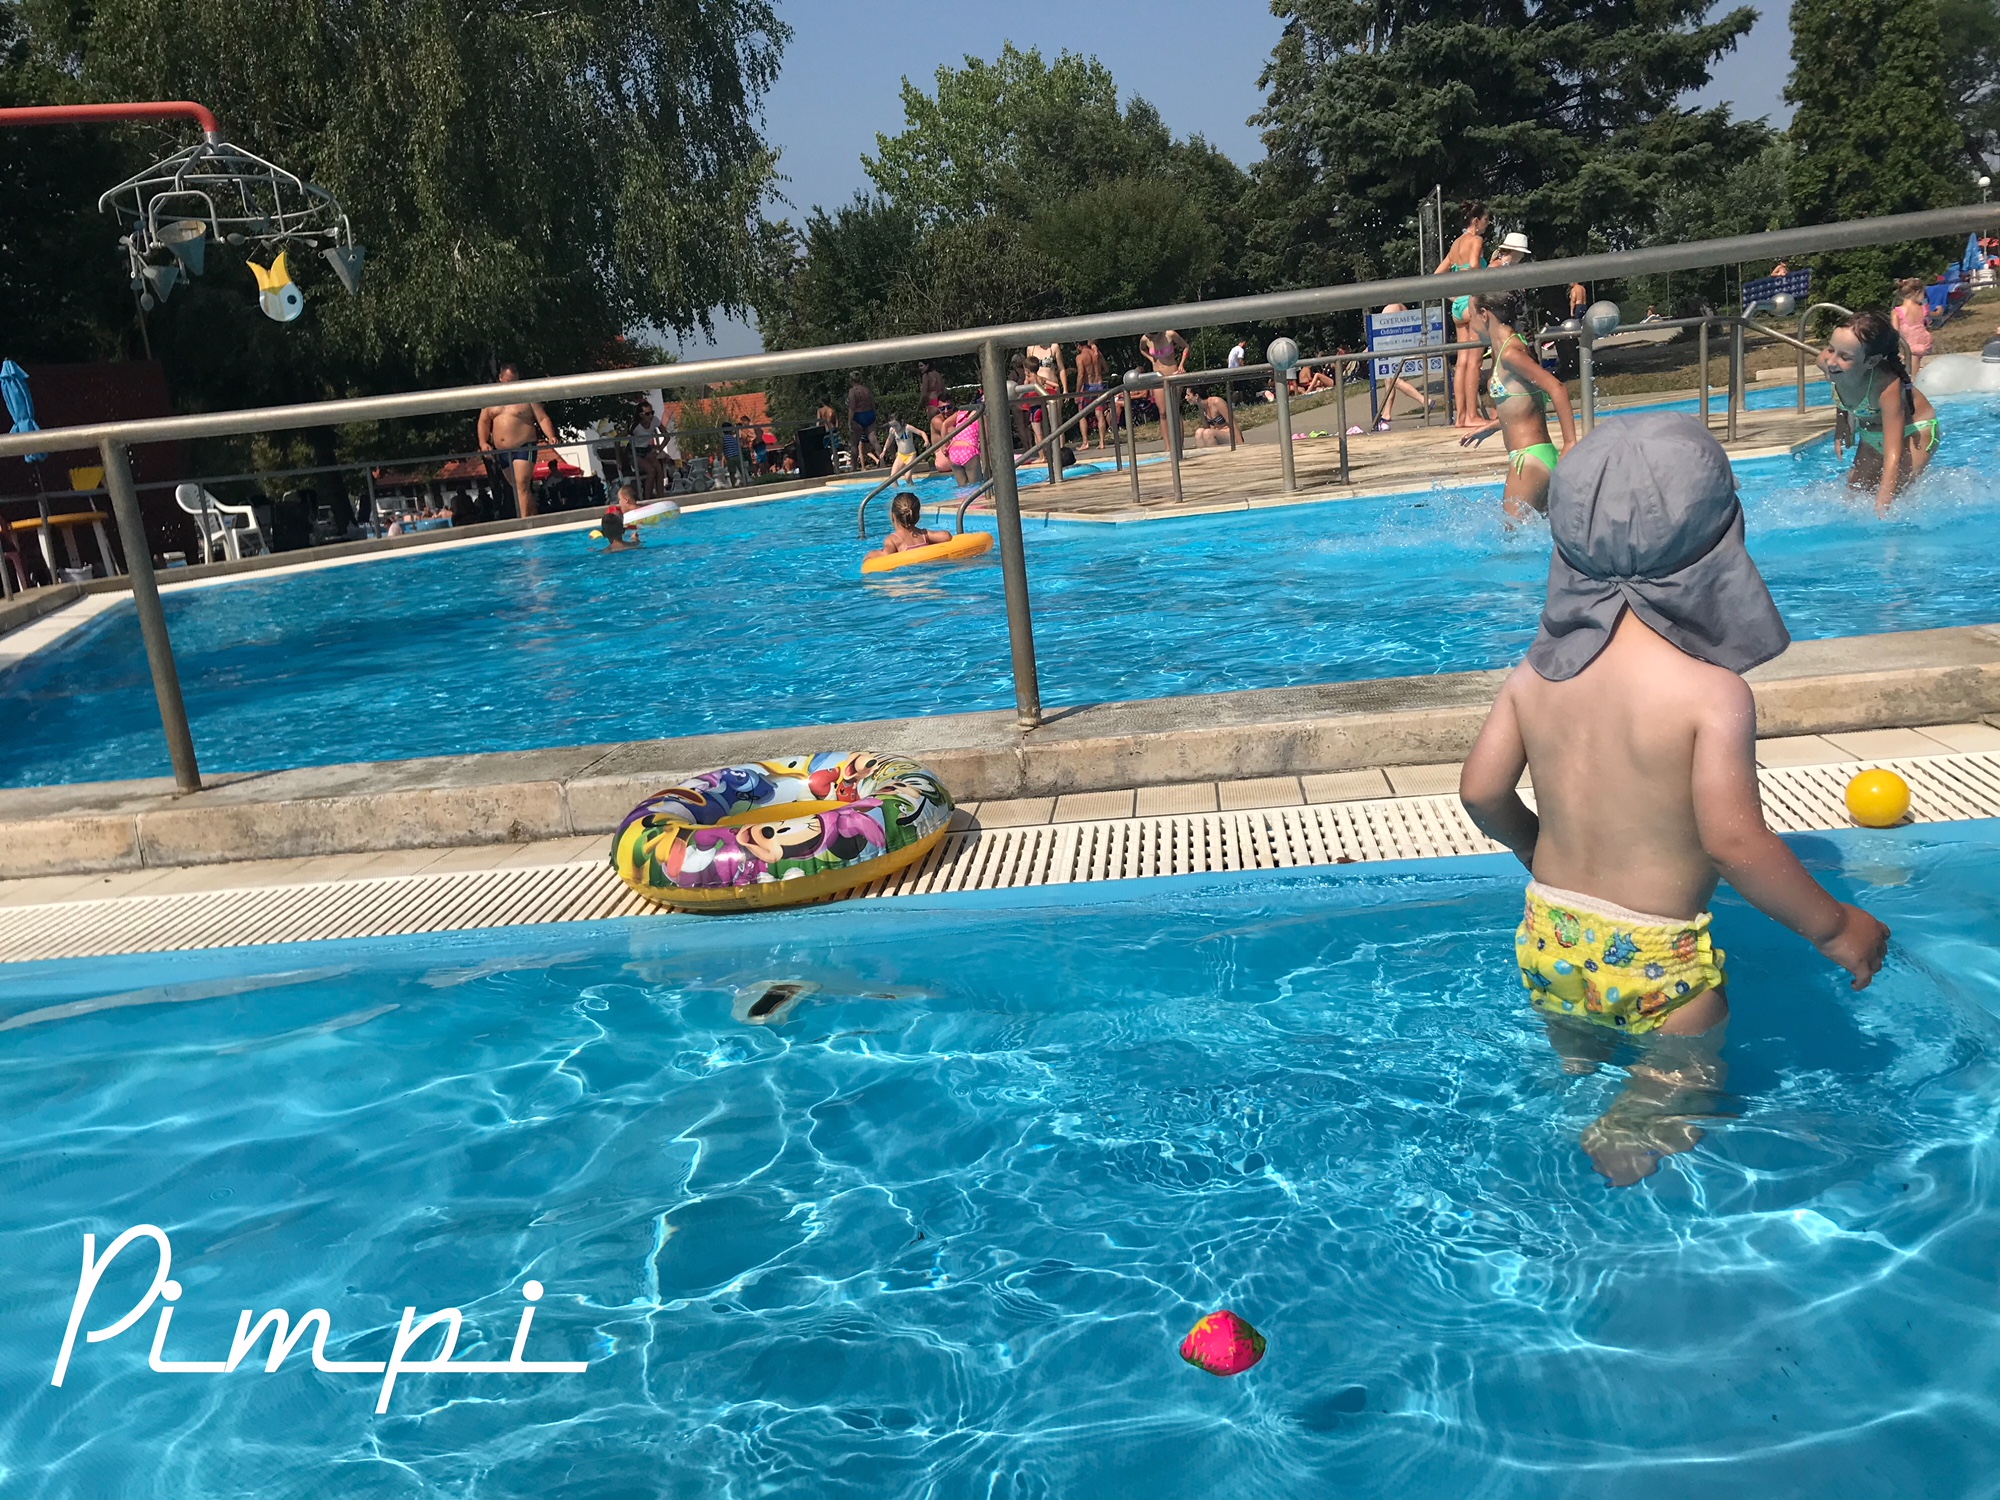 pimpi-bábo-bábätko-cestovanie-sarospatak-maďarsko-kúpalisko-detský bazén-teplá voda-jedlo-hry-ihrisko-kam s deťmi-cestovateľský blog-rady a tipy